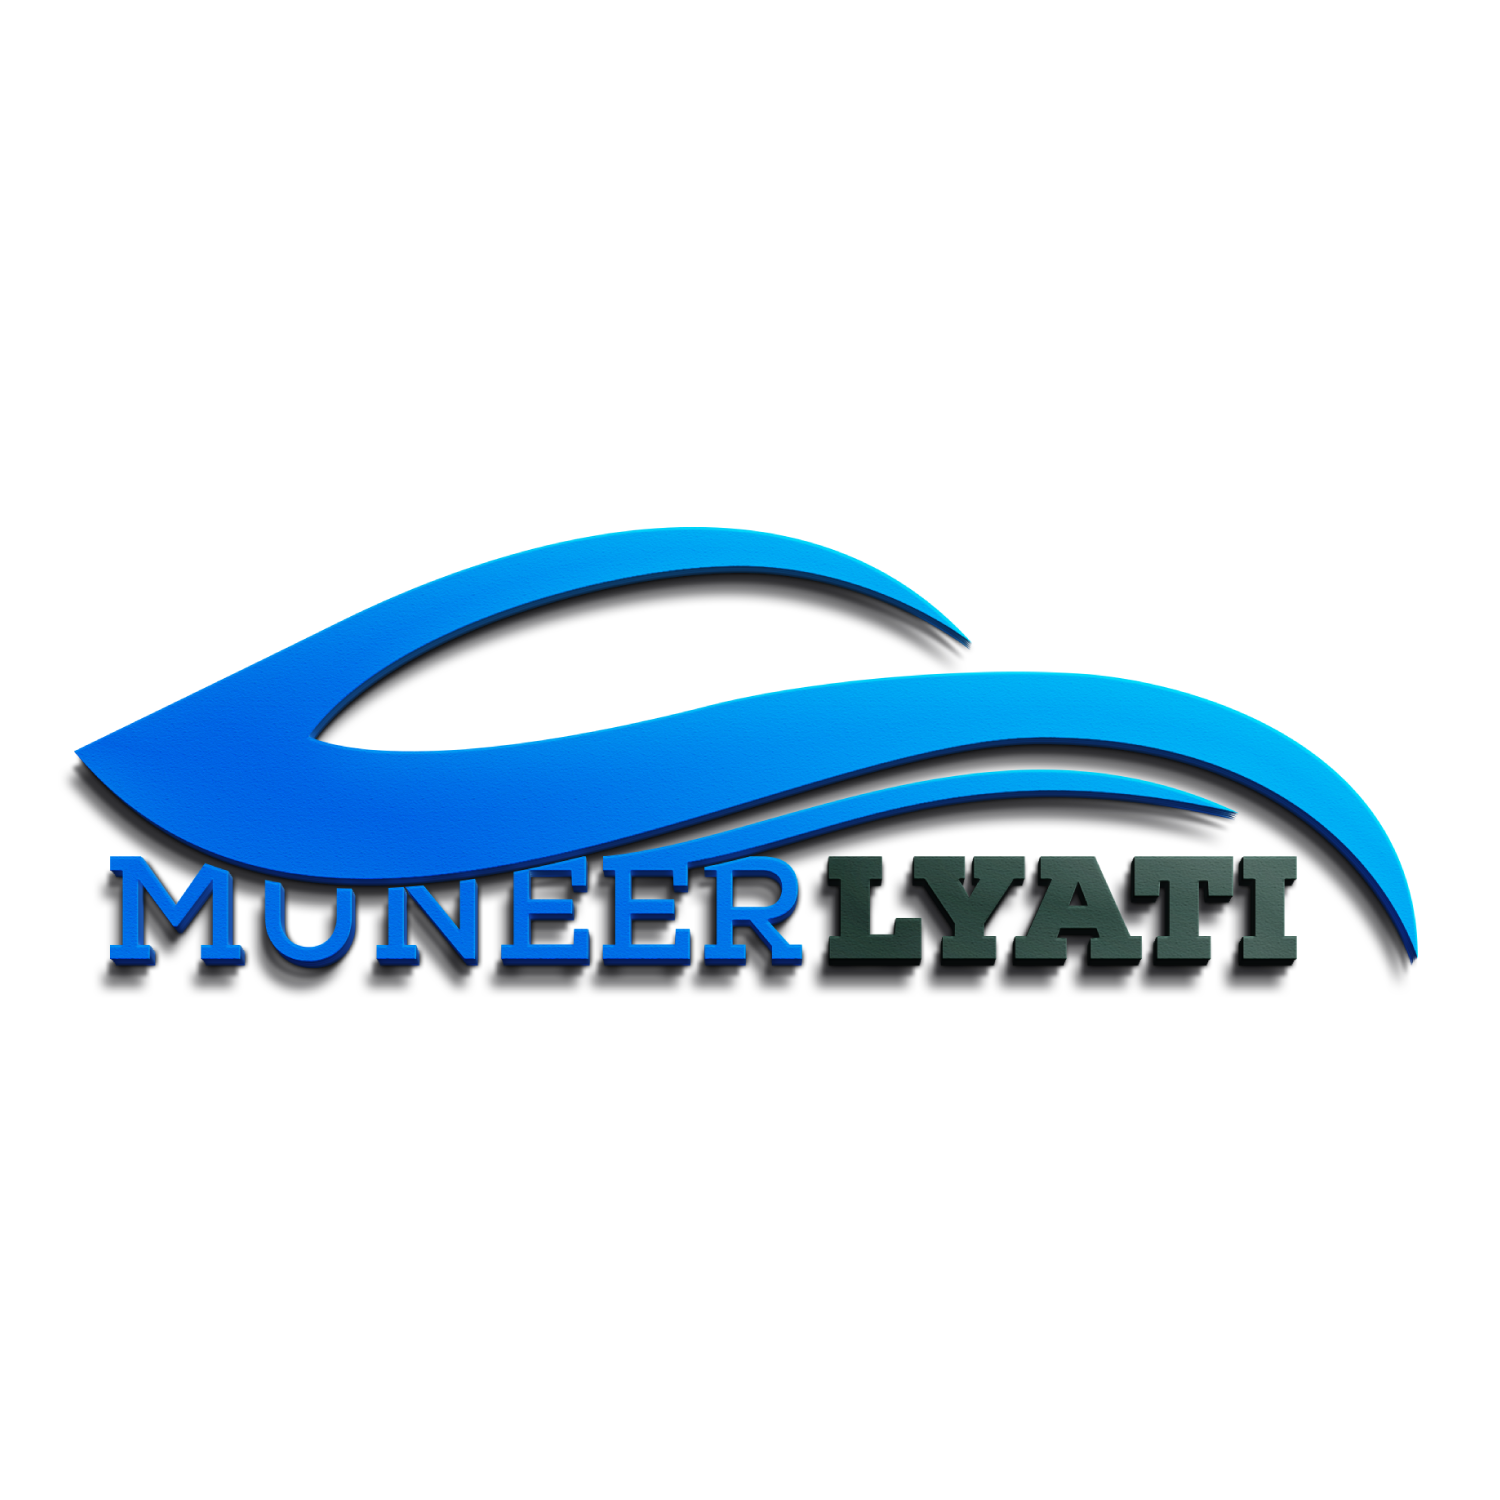 Muneer Mujahed Lyati